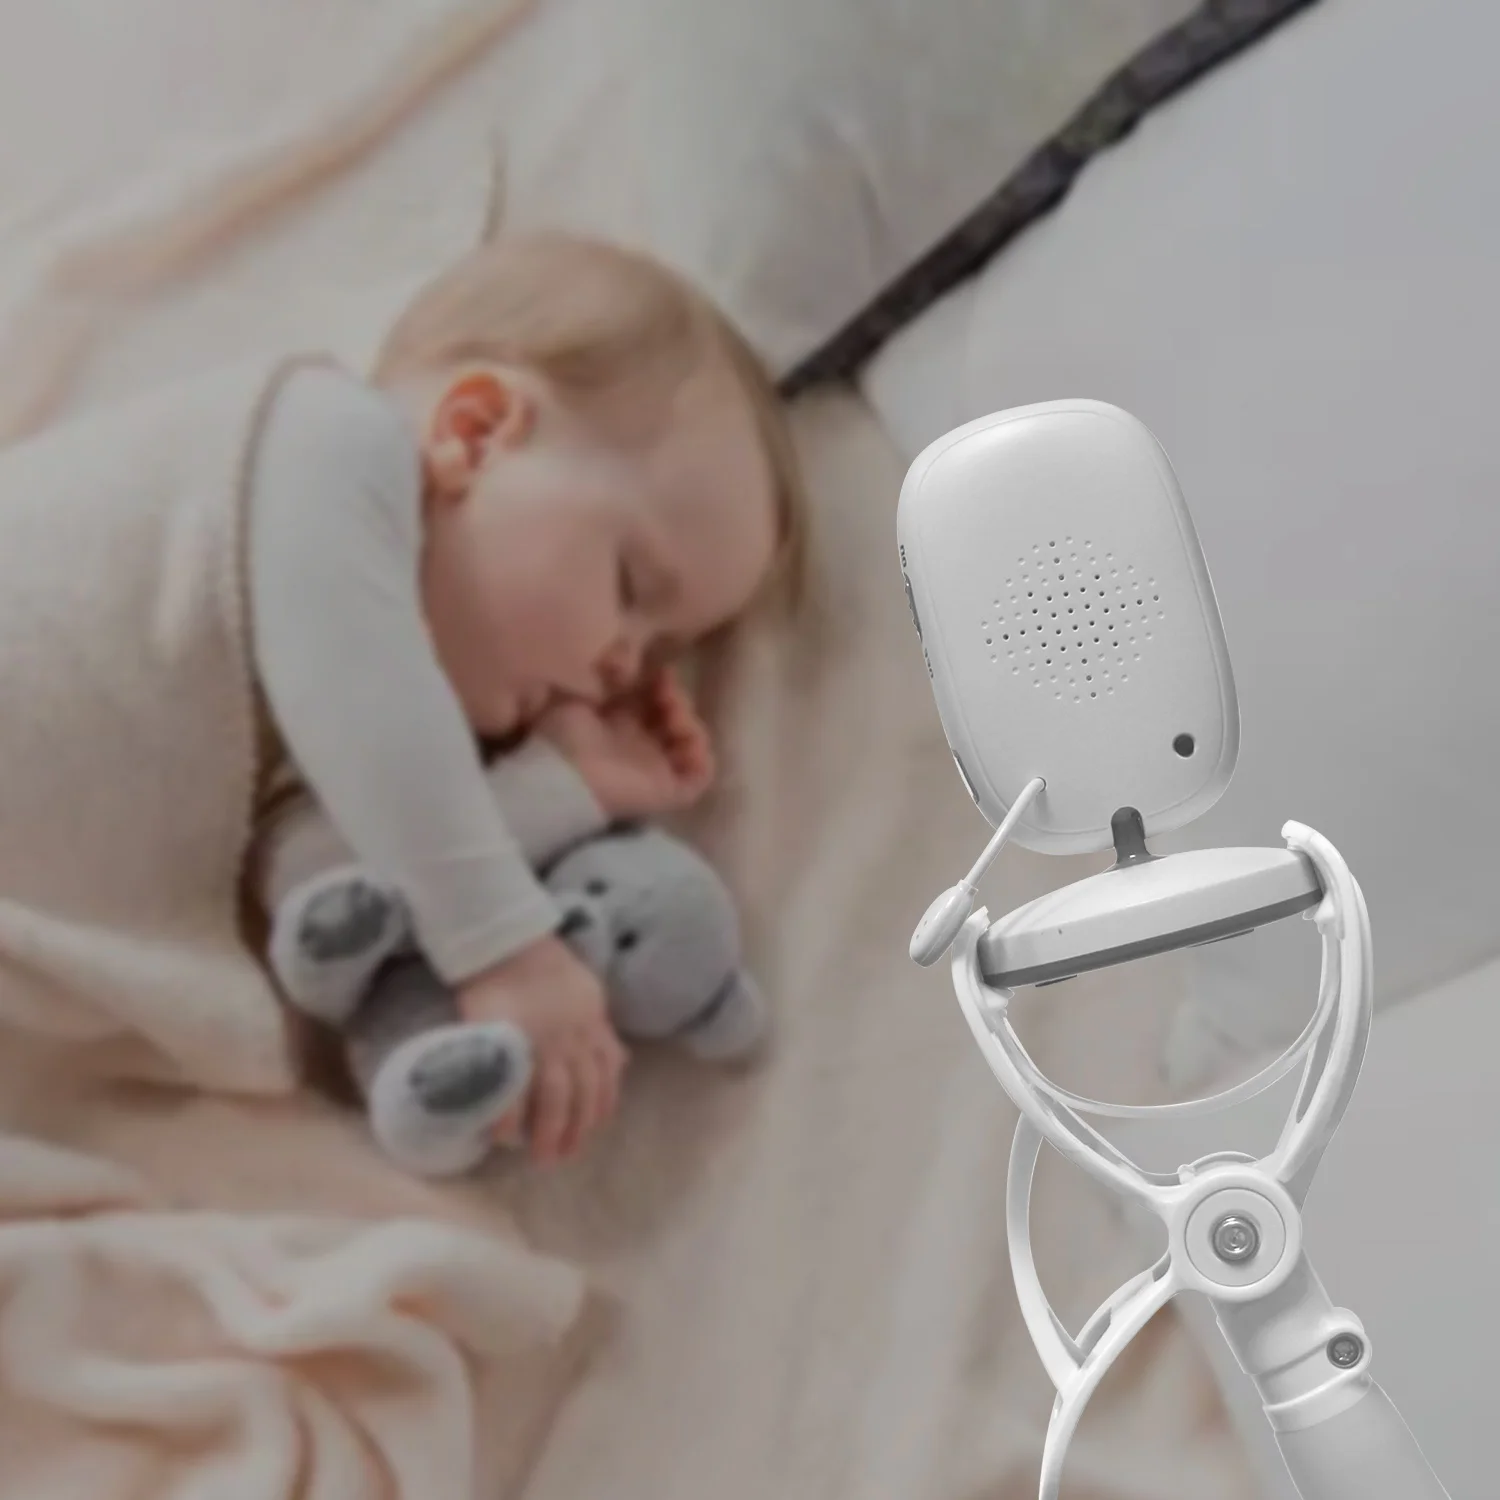 Multifunktions Universal Telefon Halter Stehen Bett Faul Wiege Lange Arm Verstellbar 85cm Baby Monitor Wand Halterung Kamera Für Regal x5